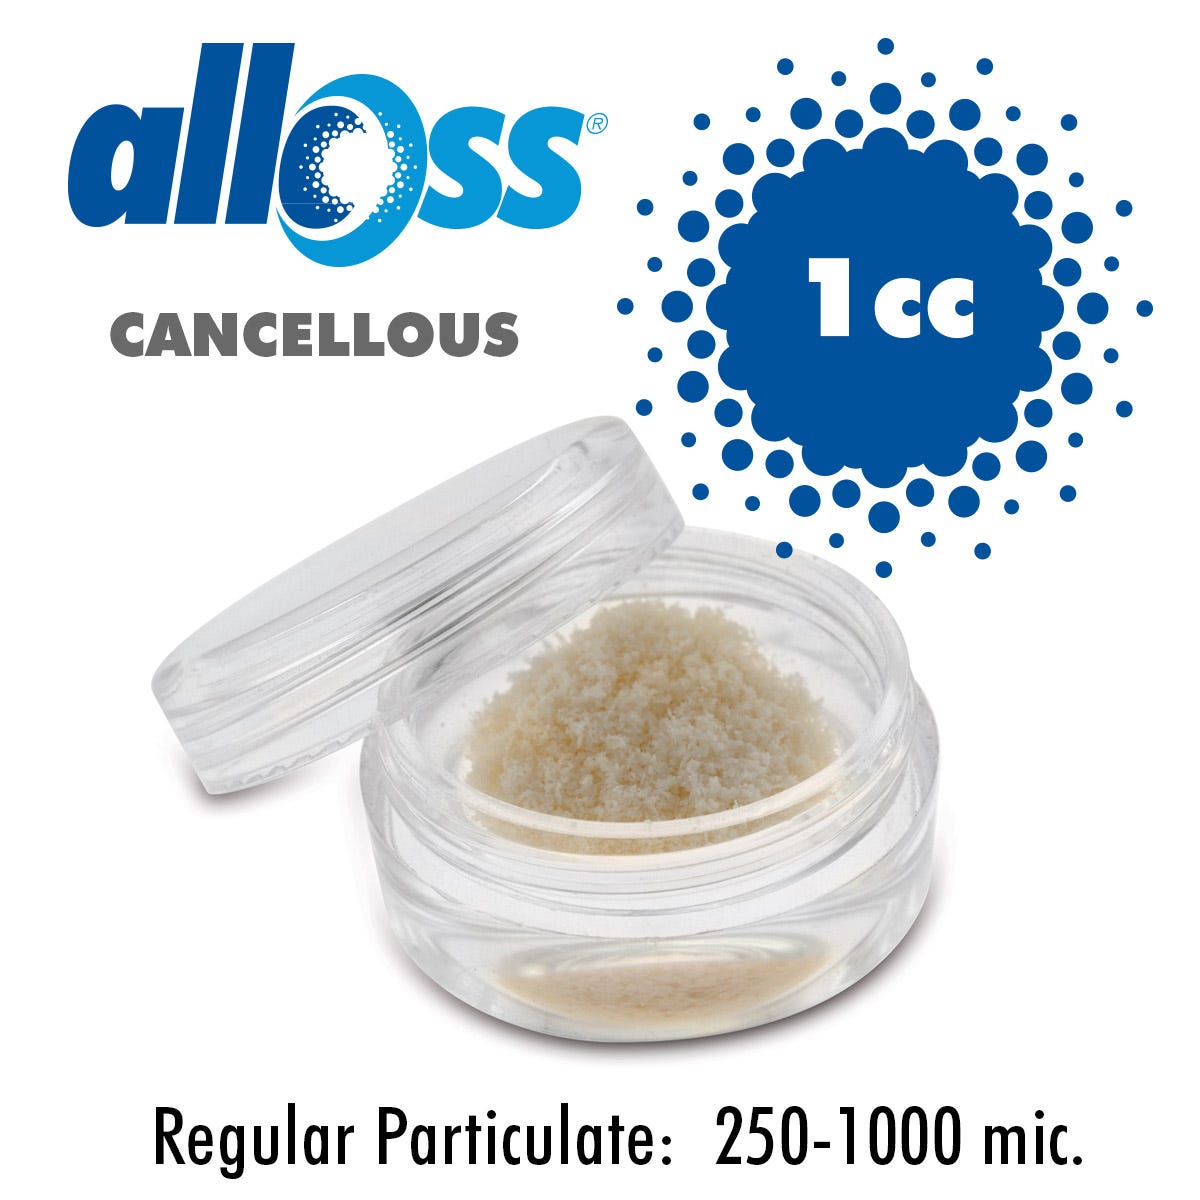 alloOss® Cancellous Particulate 250-1000um (1.0cc)